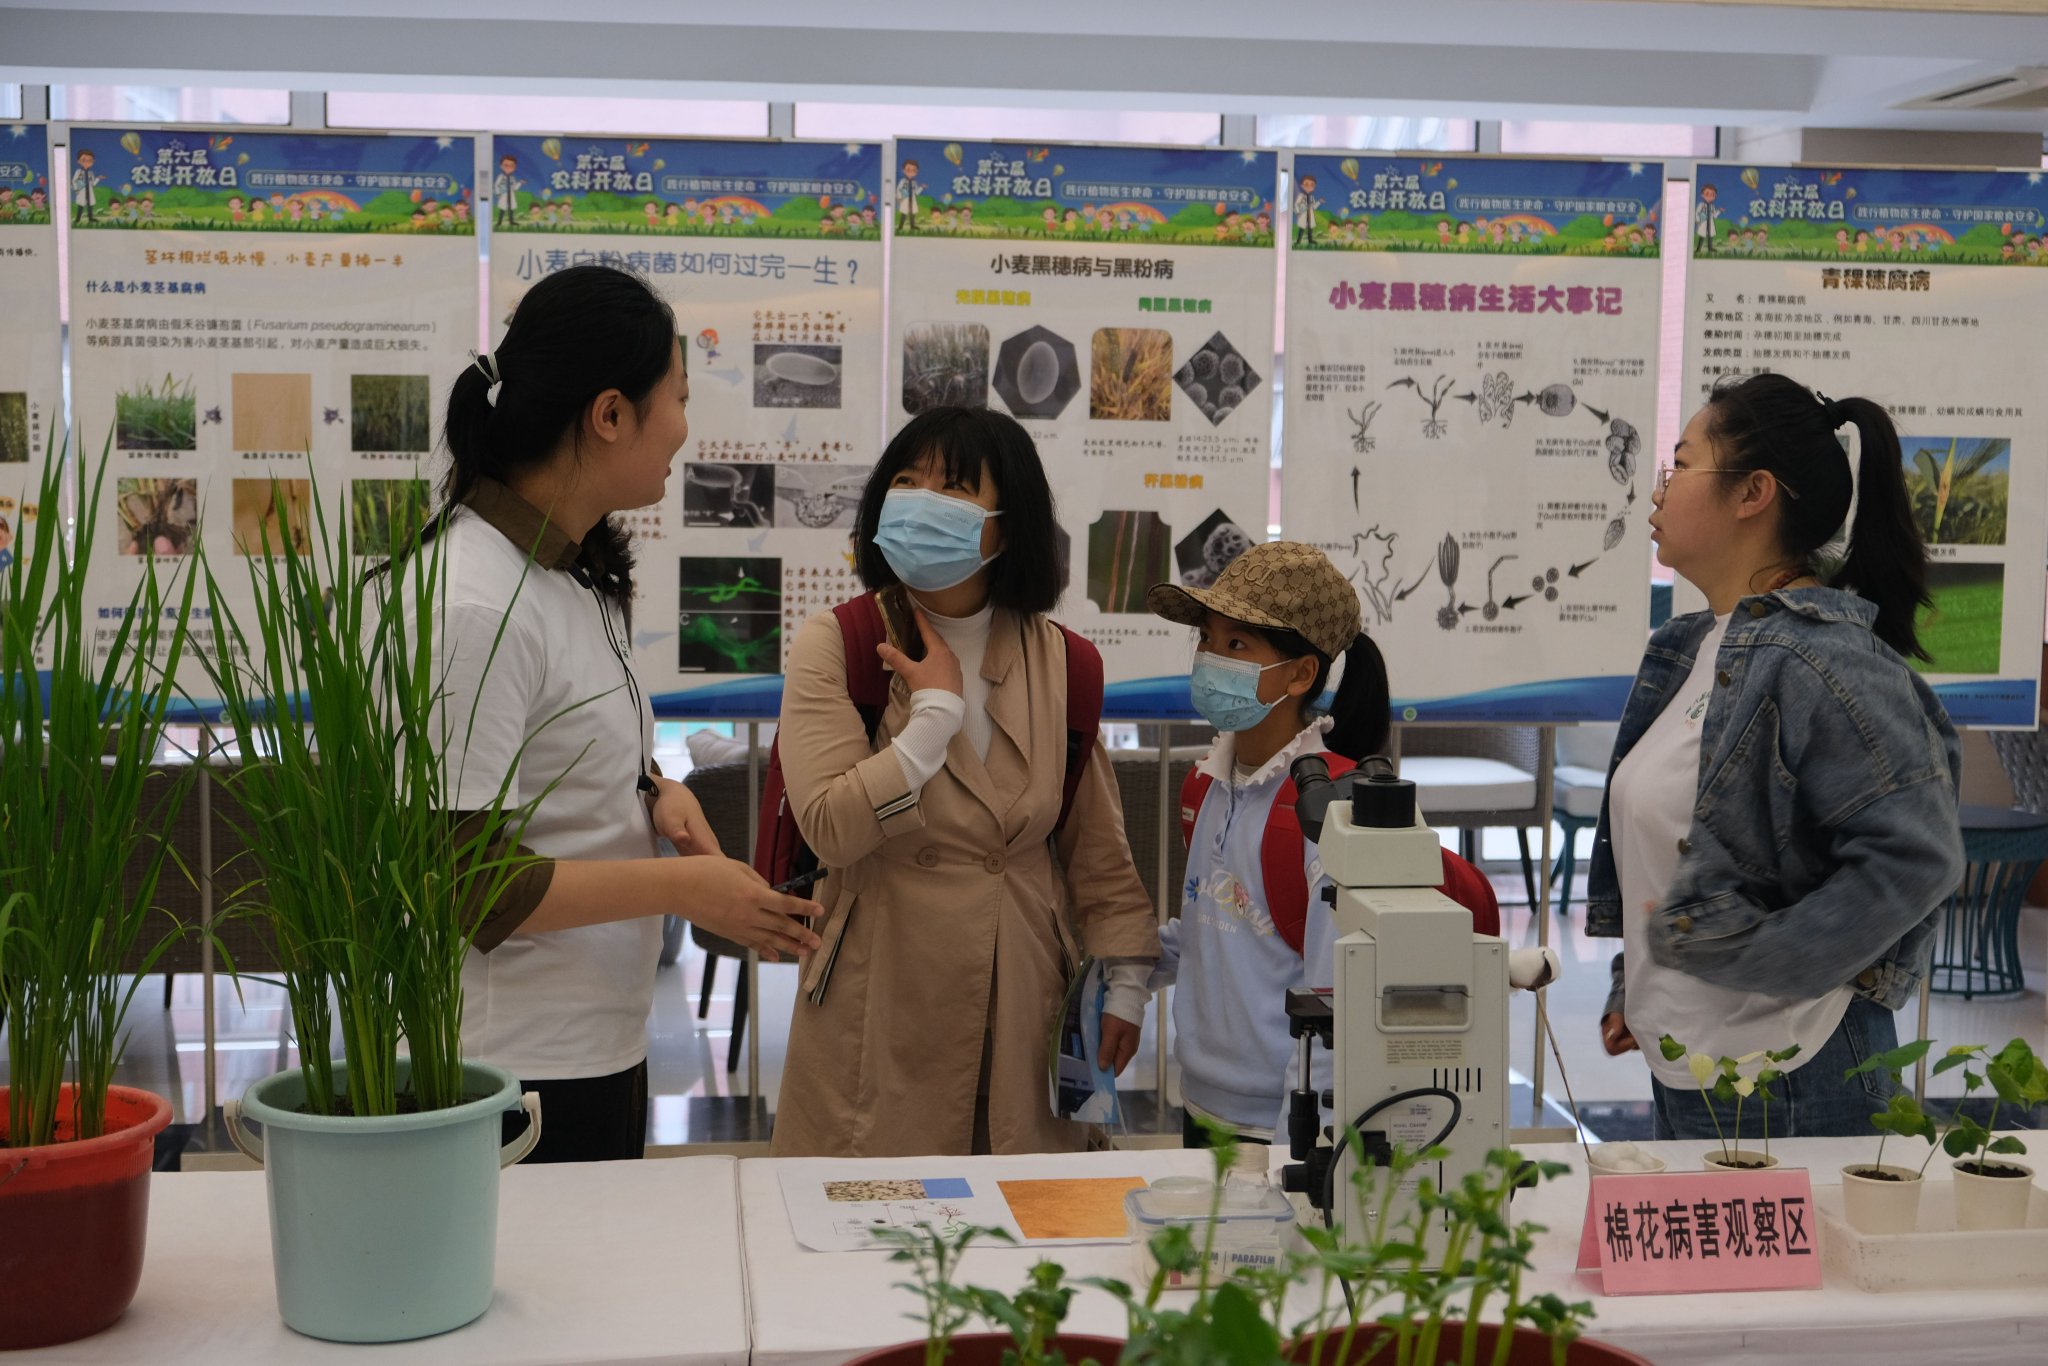 植保所工作人員正在為家長和小朋友講解植保知識。中國農科院植保所供圖